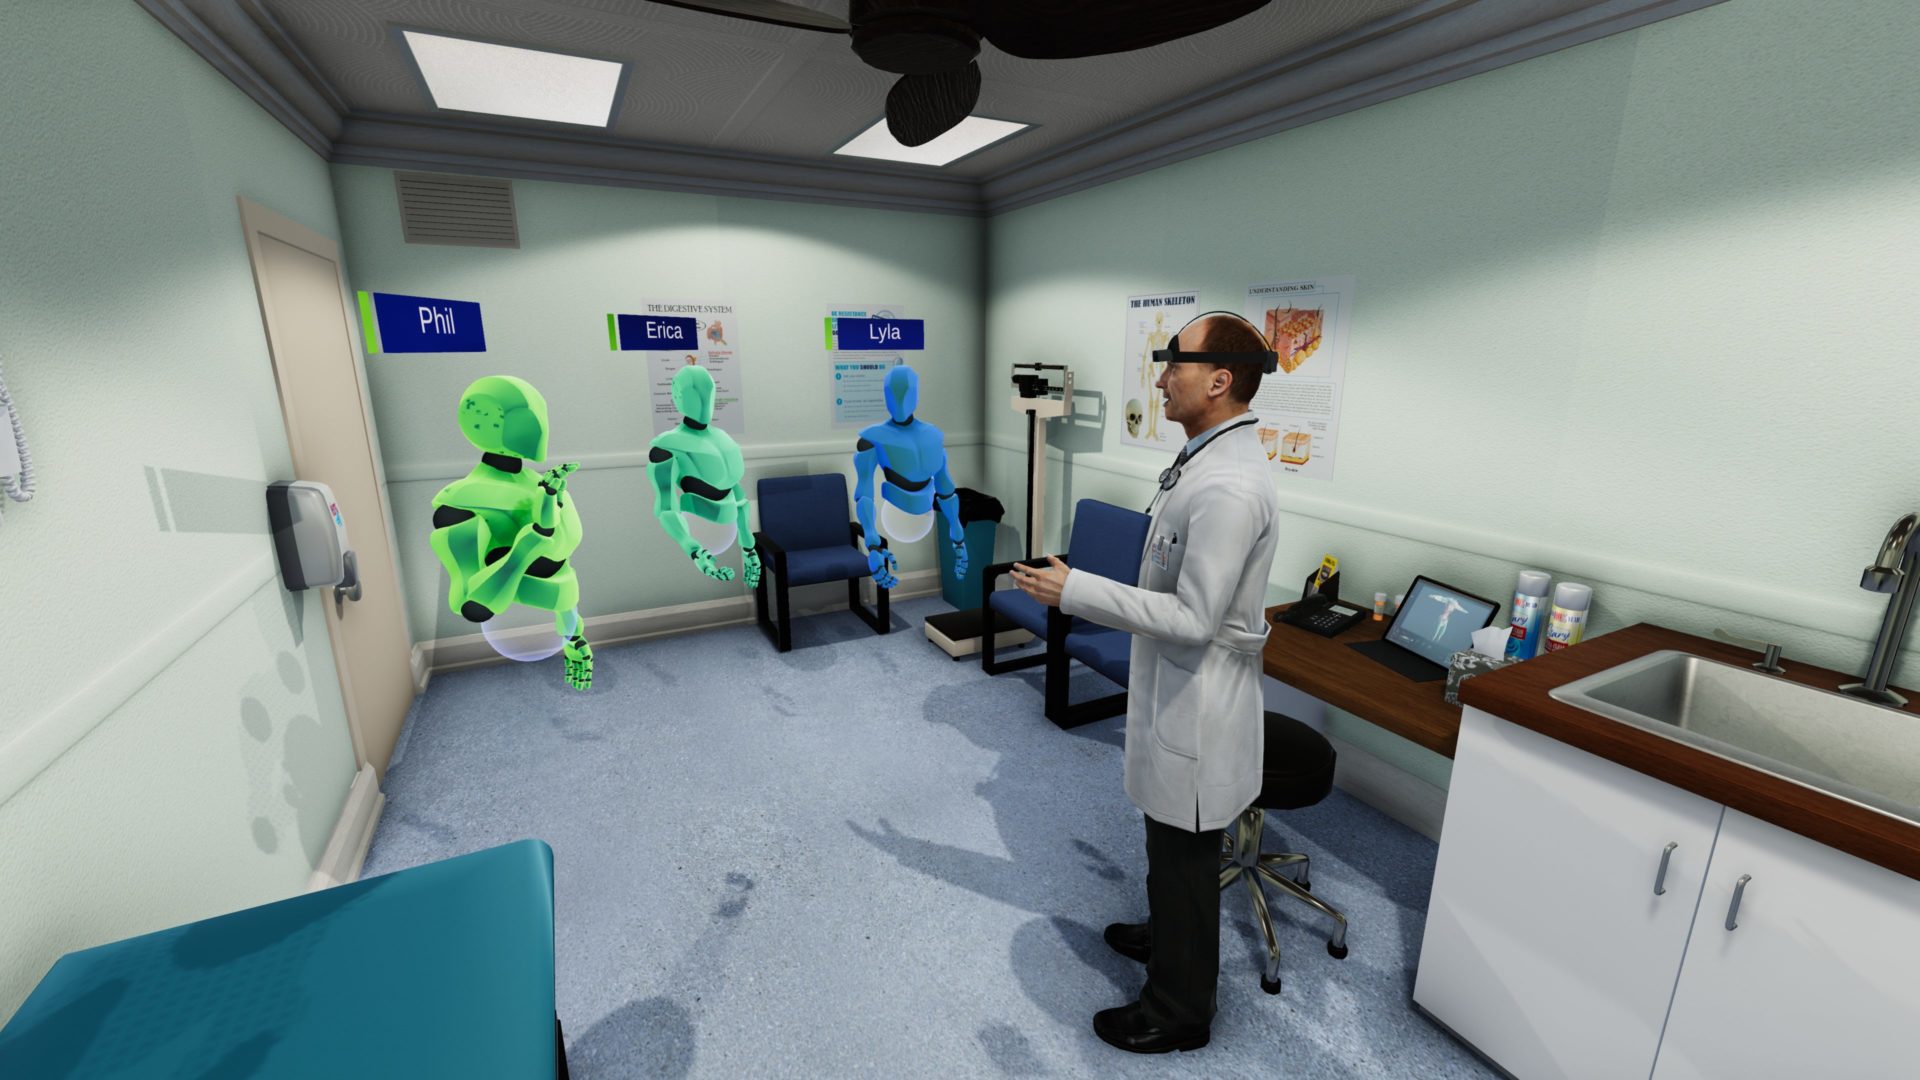 Doctor avatars for VR medical training.